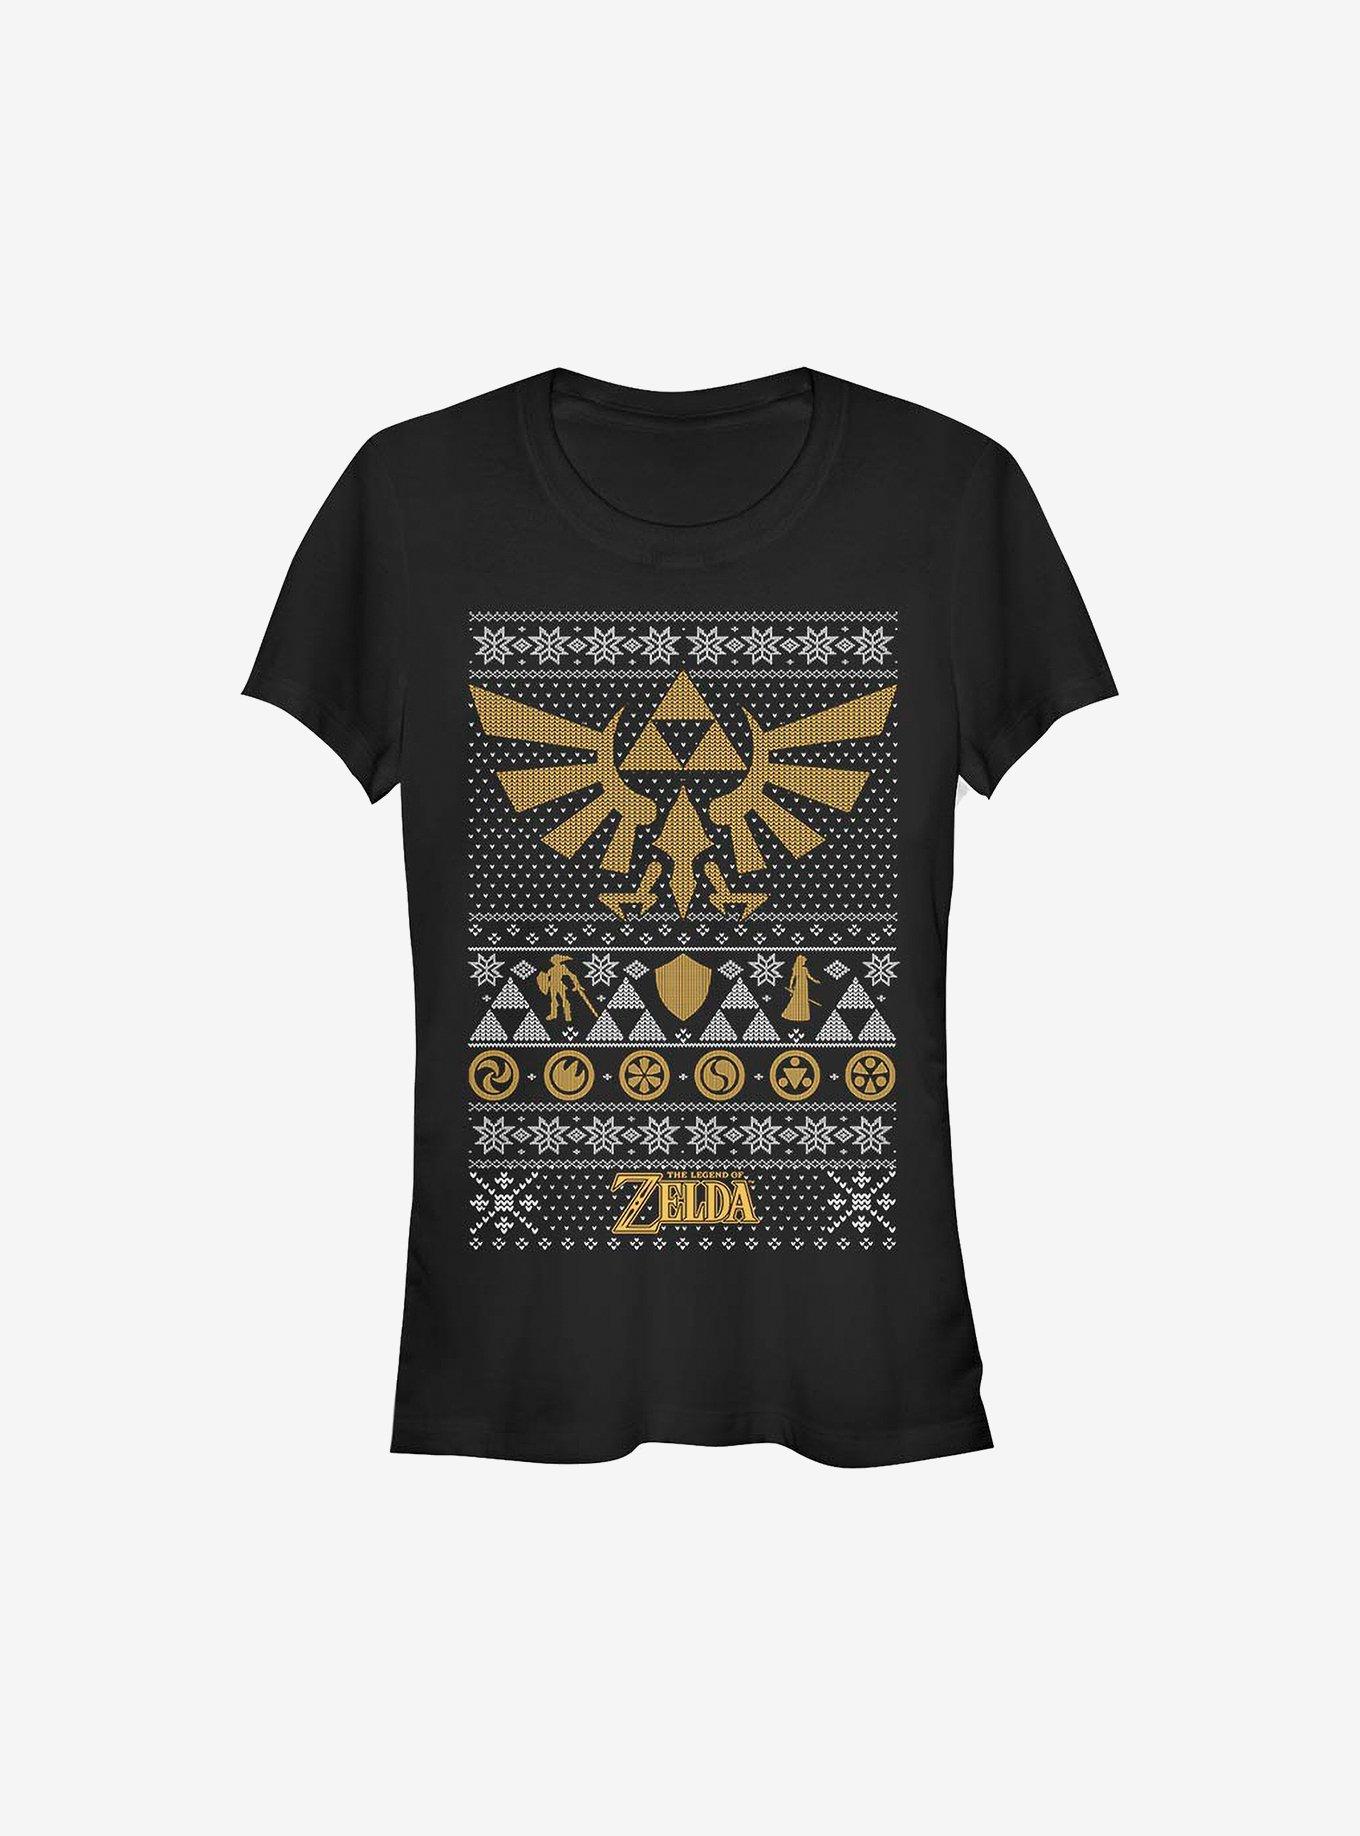 Nintendo The Legend Of Zelda Legends Ugly Christmas Sweater Girls T-Shirt, BLACK, hi-res